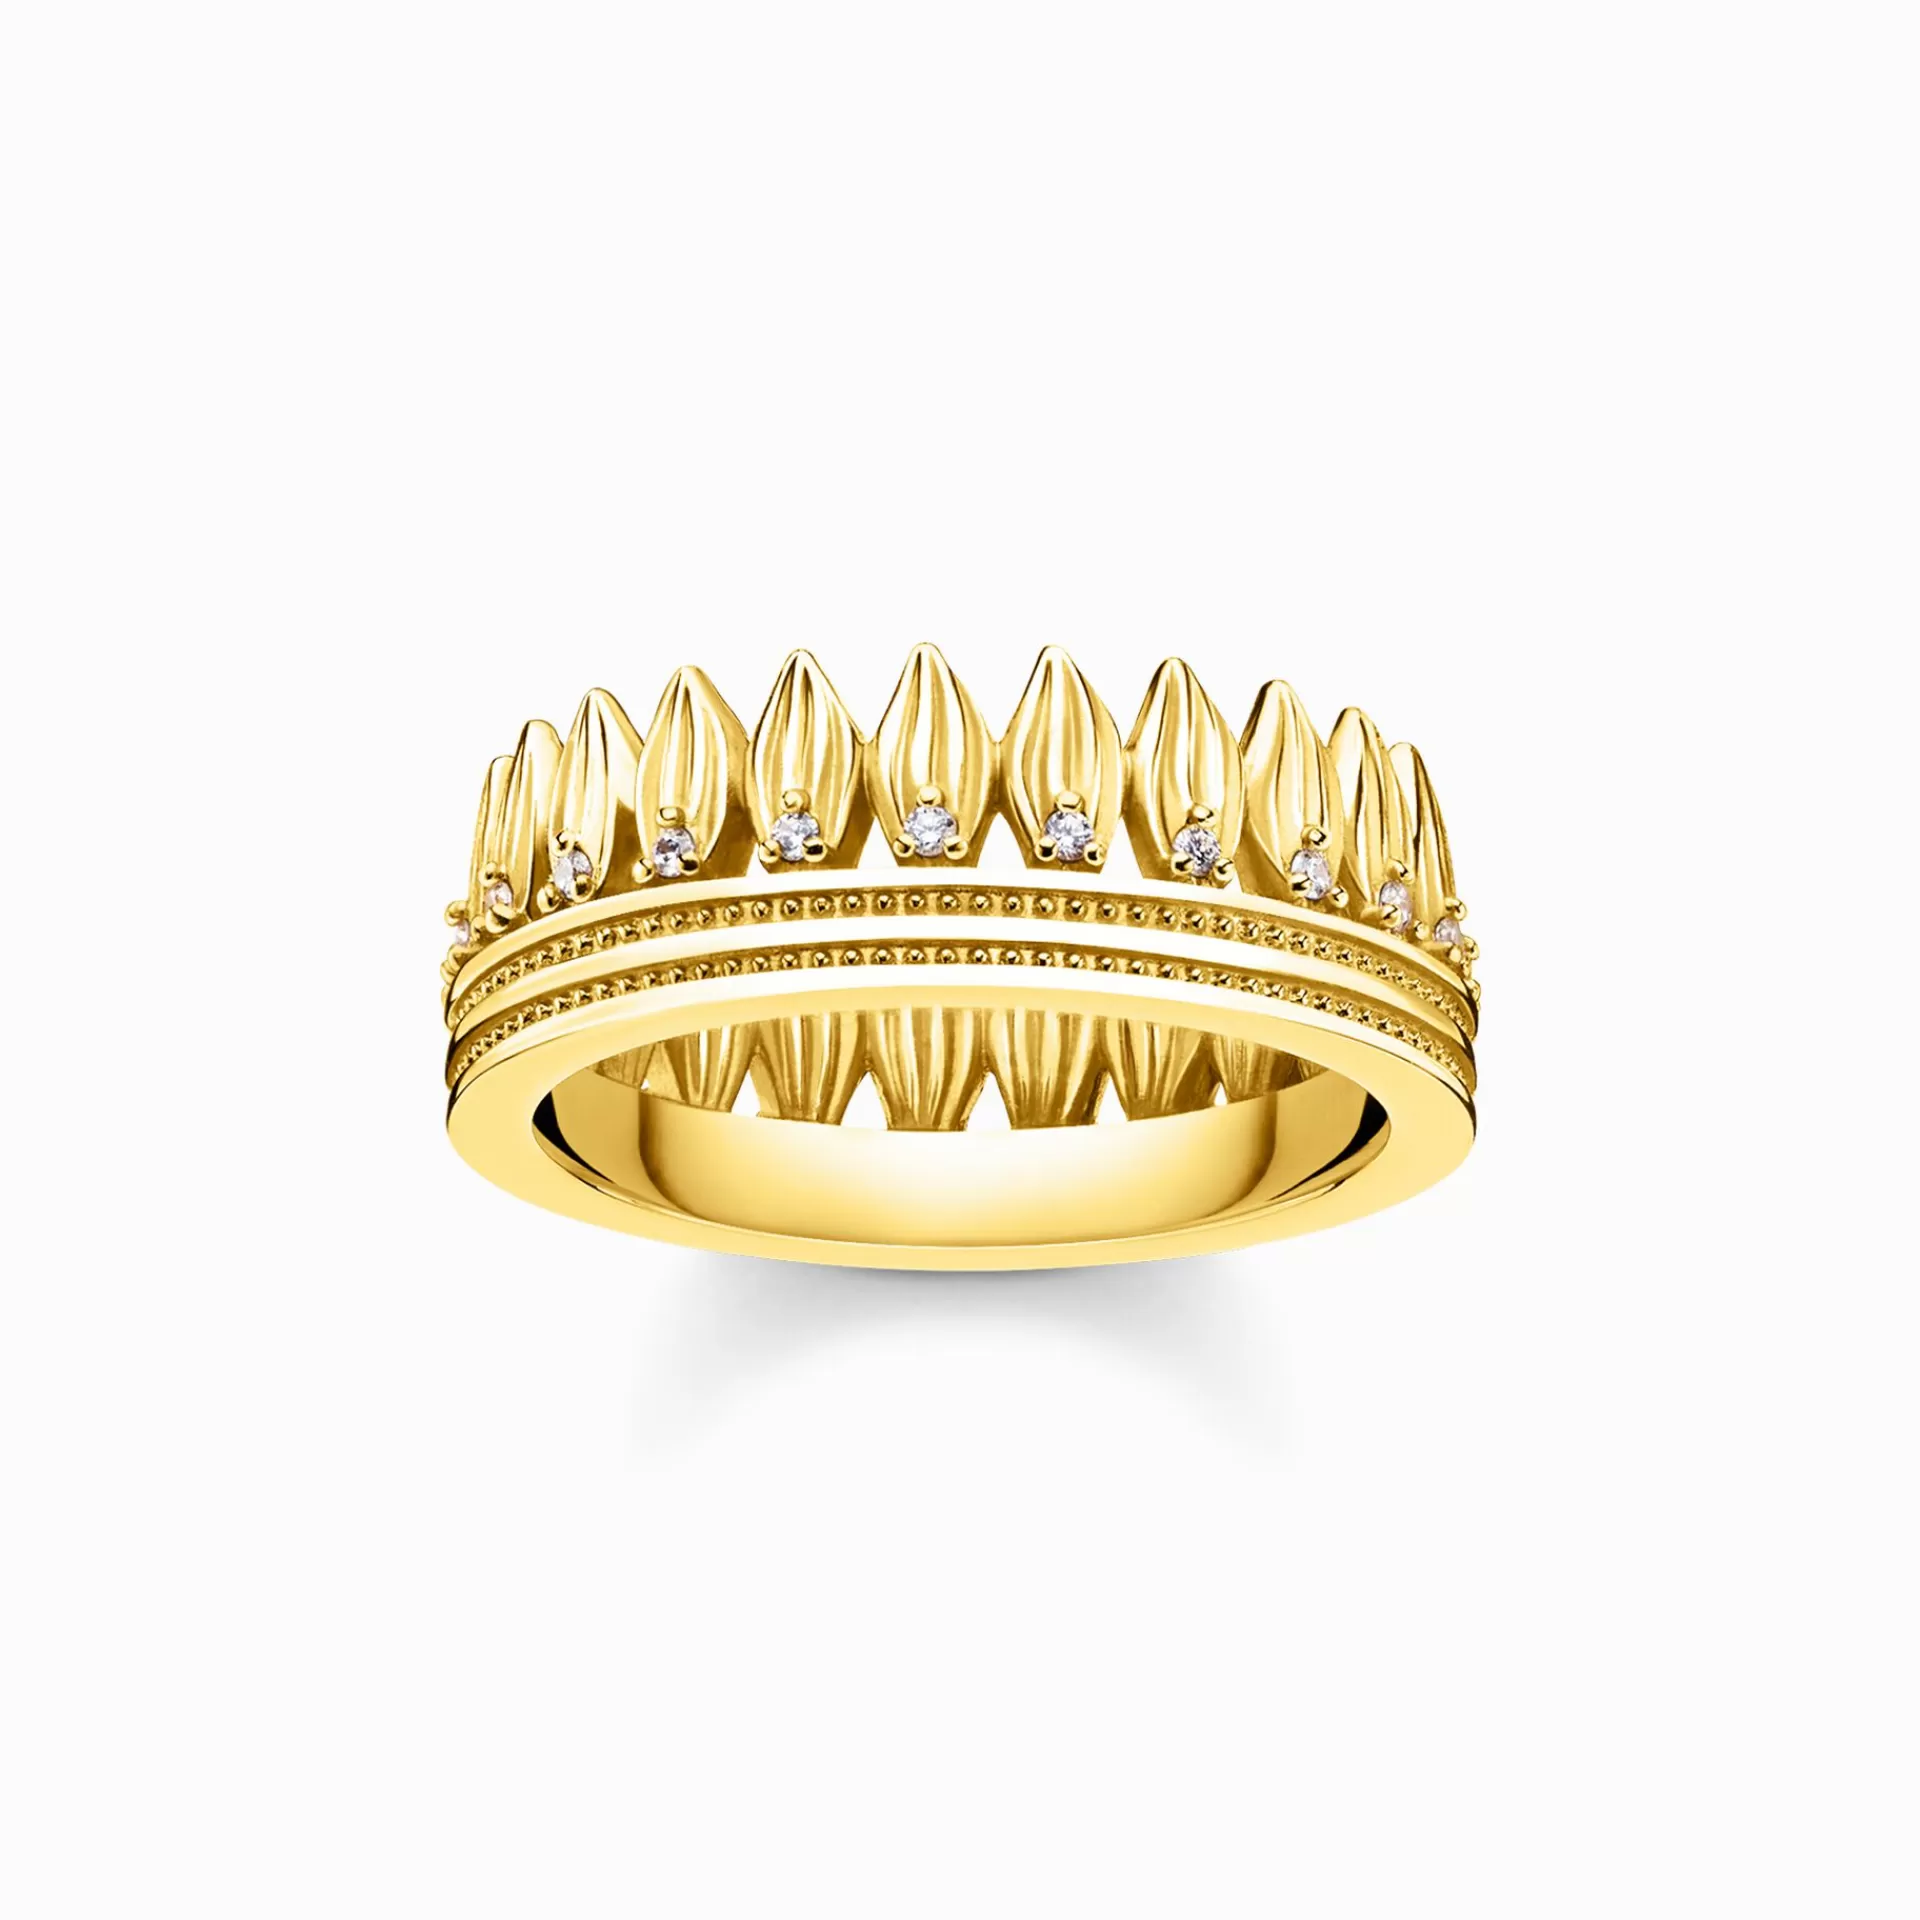 THOMAS SABO Partner-smycken | Partner-smycken<RING BLAD KRONA GULD gult guldfargad, vit